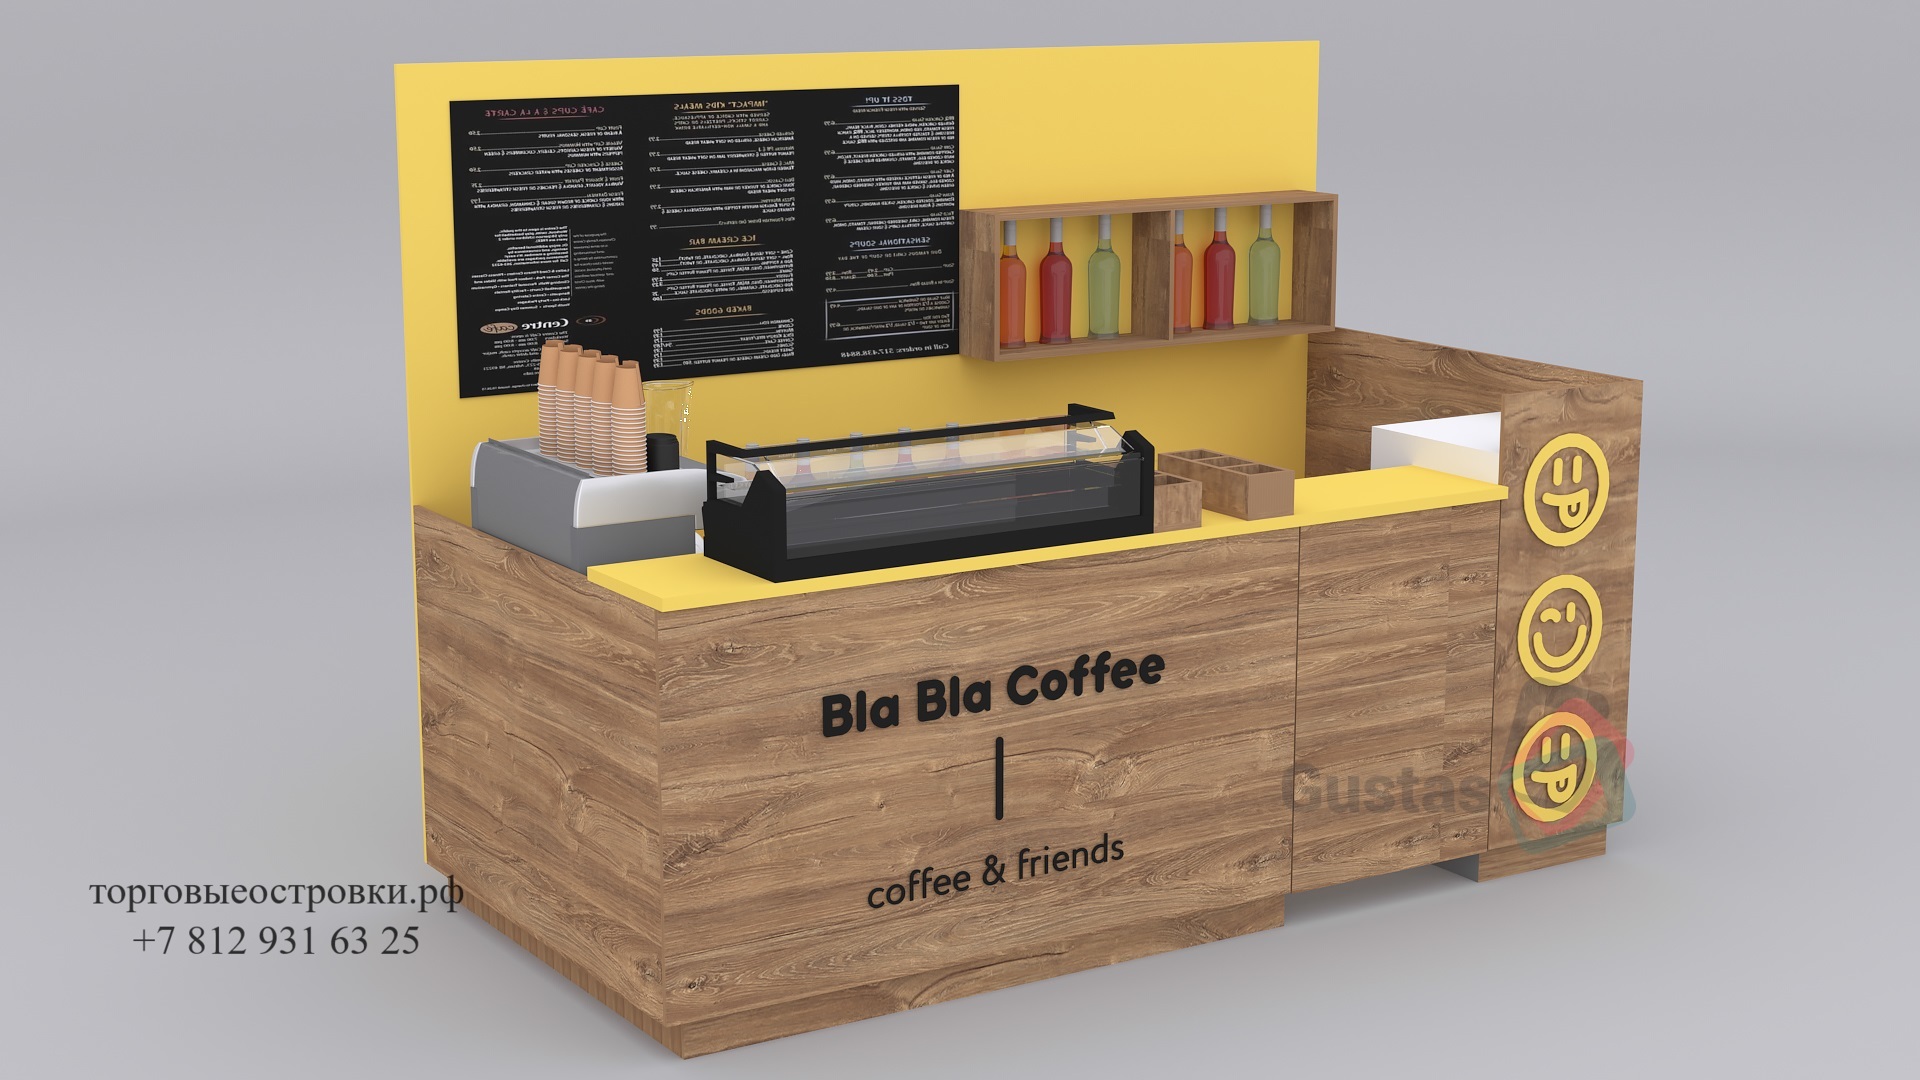 Торговый островок кофе Bla Bla Coffee